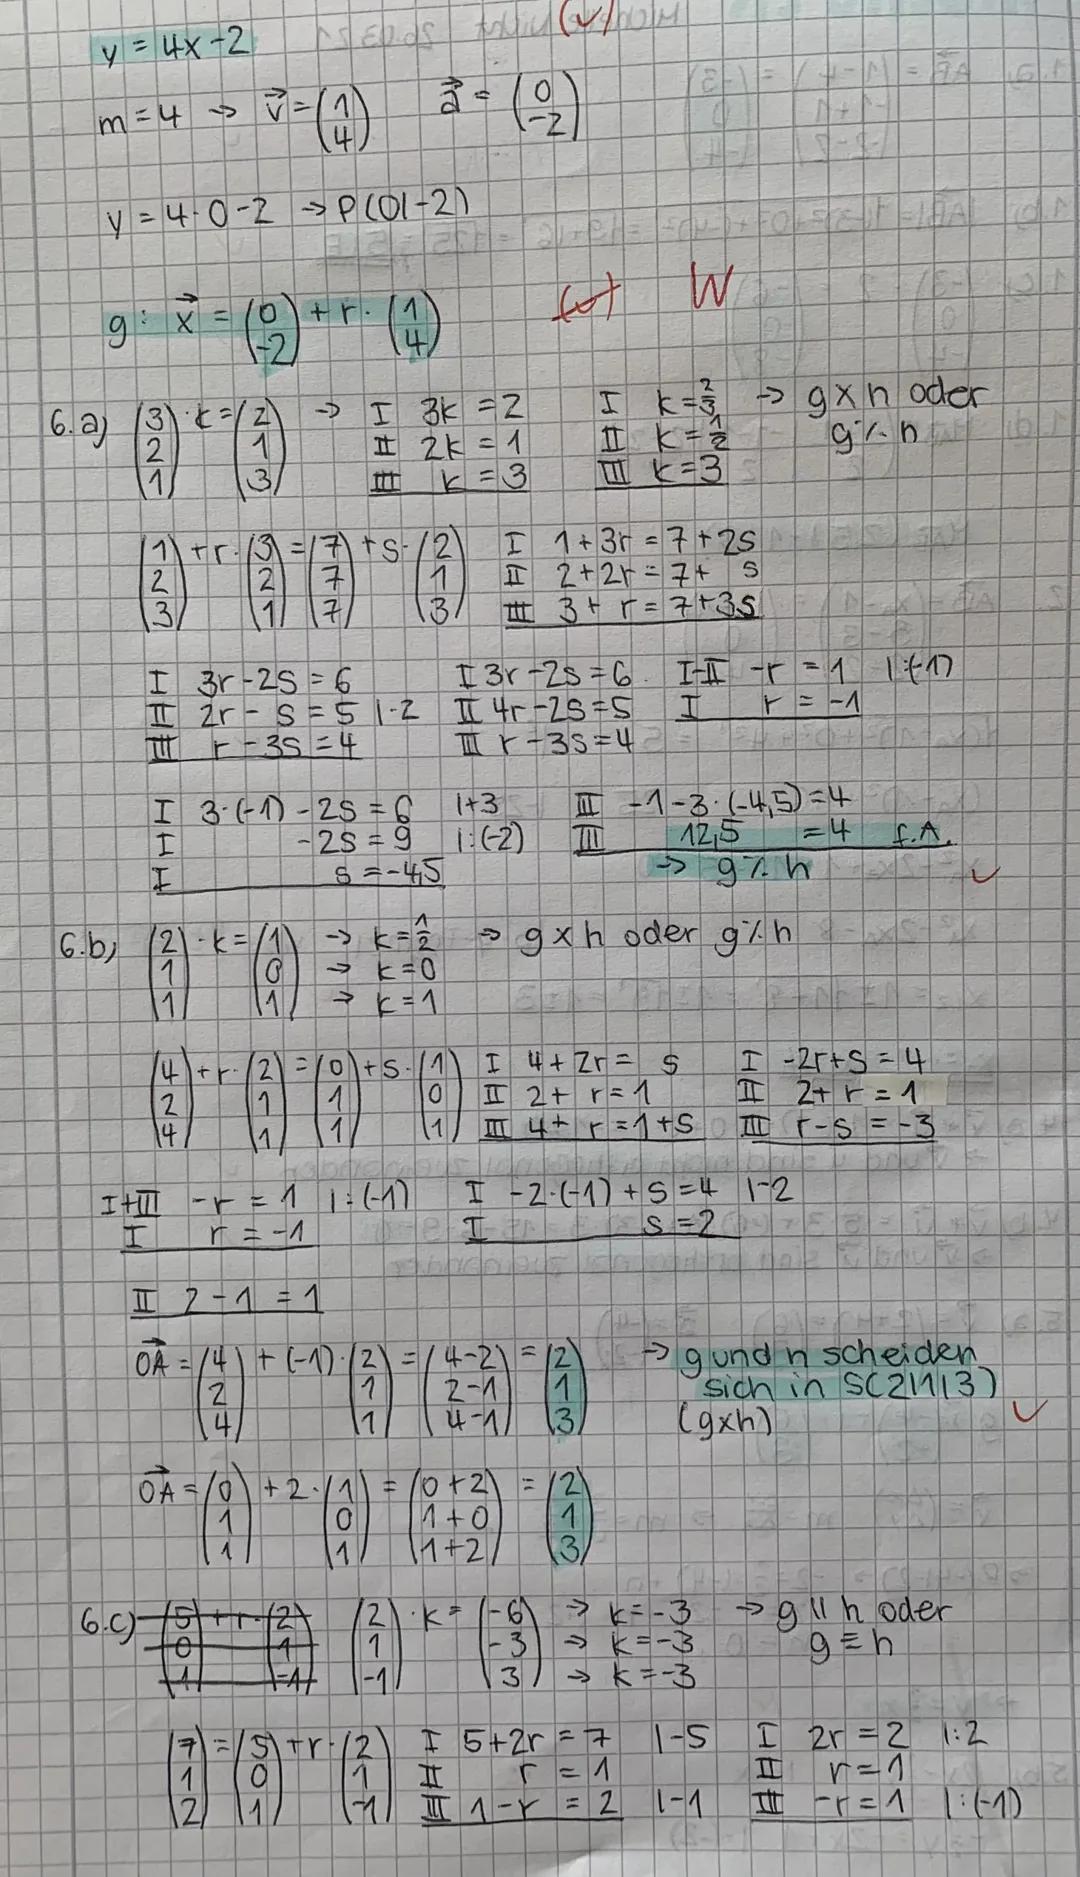 mathe LK
1.a, AB = /1-4 = /-3)
-1 +1
1-2-2/
0
1-4
|AB| = 1-3)² +0² + (-4)² = √9+16-125-5LE
1-3
0
1-4/
1.b)
1. C)
F
1. d) MA 4+1
2
0
1-8,
MAB